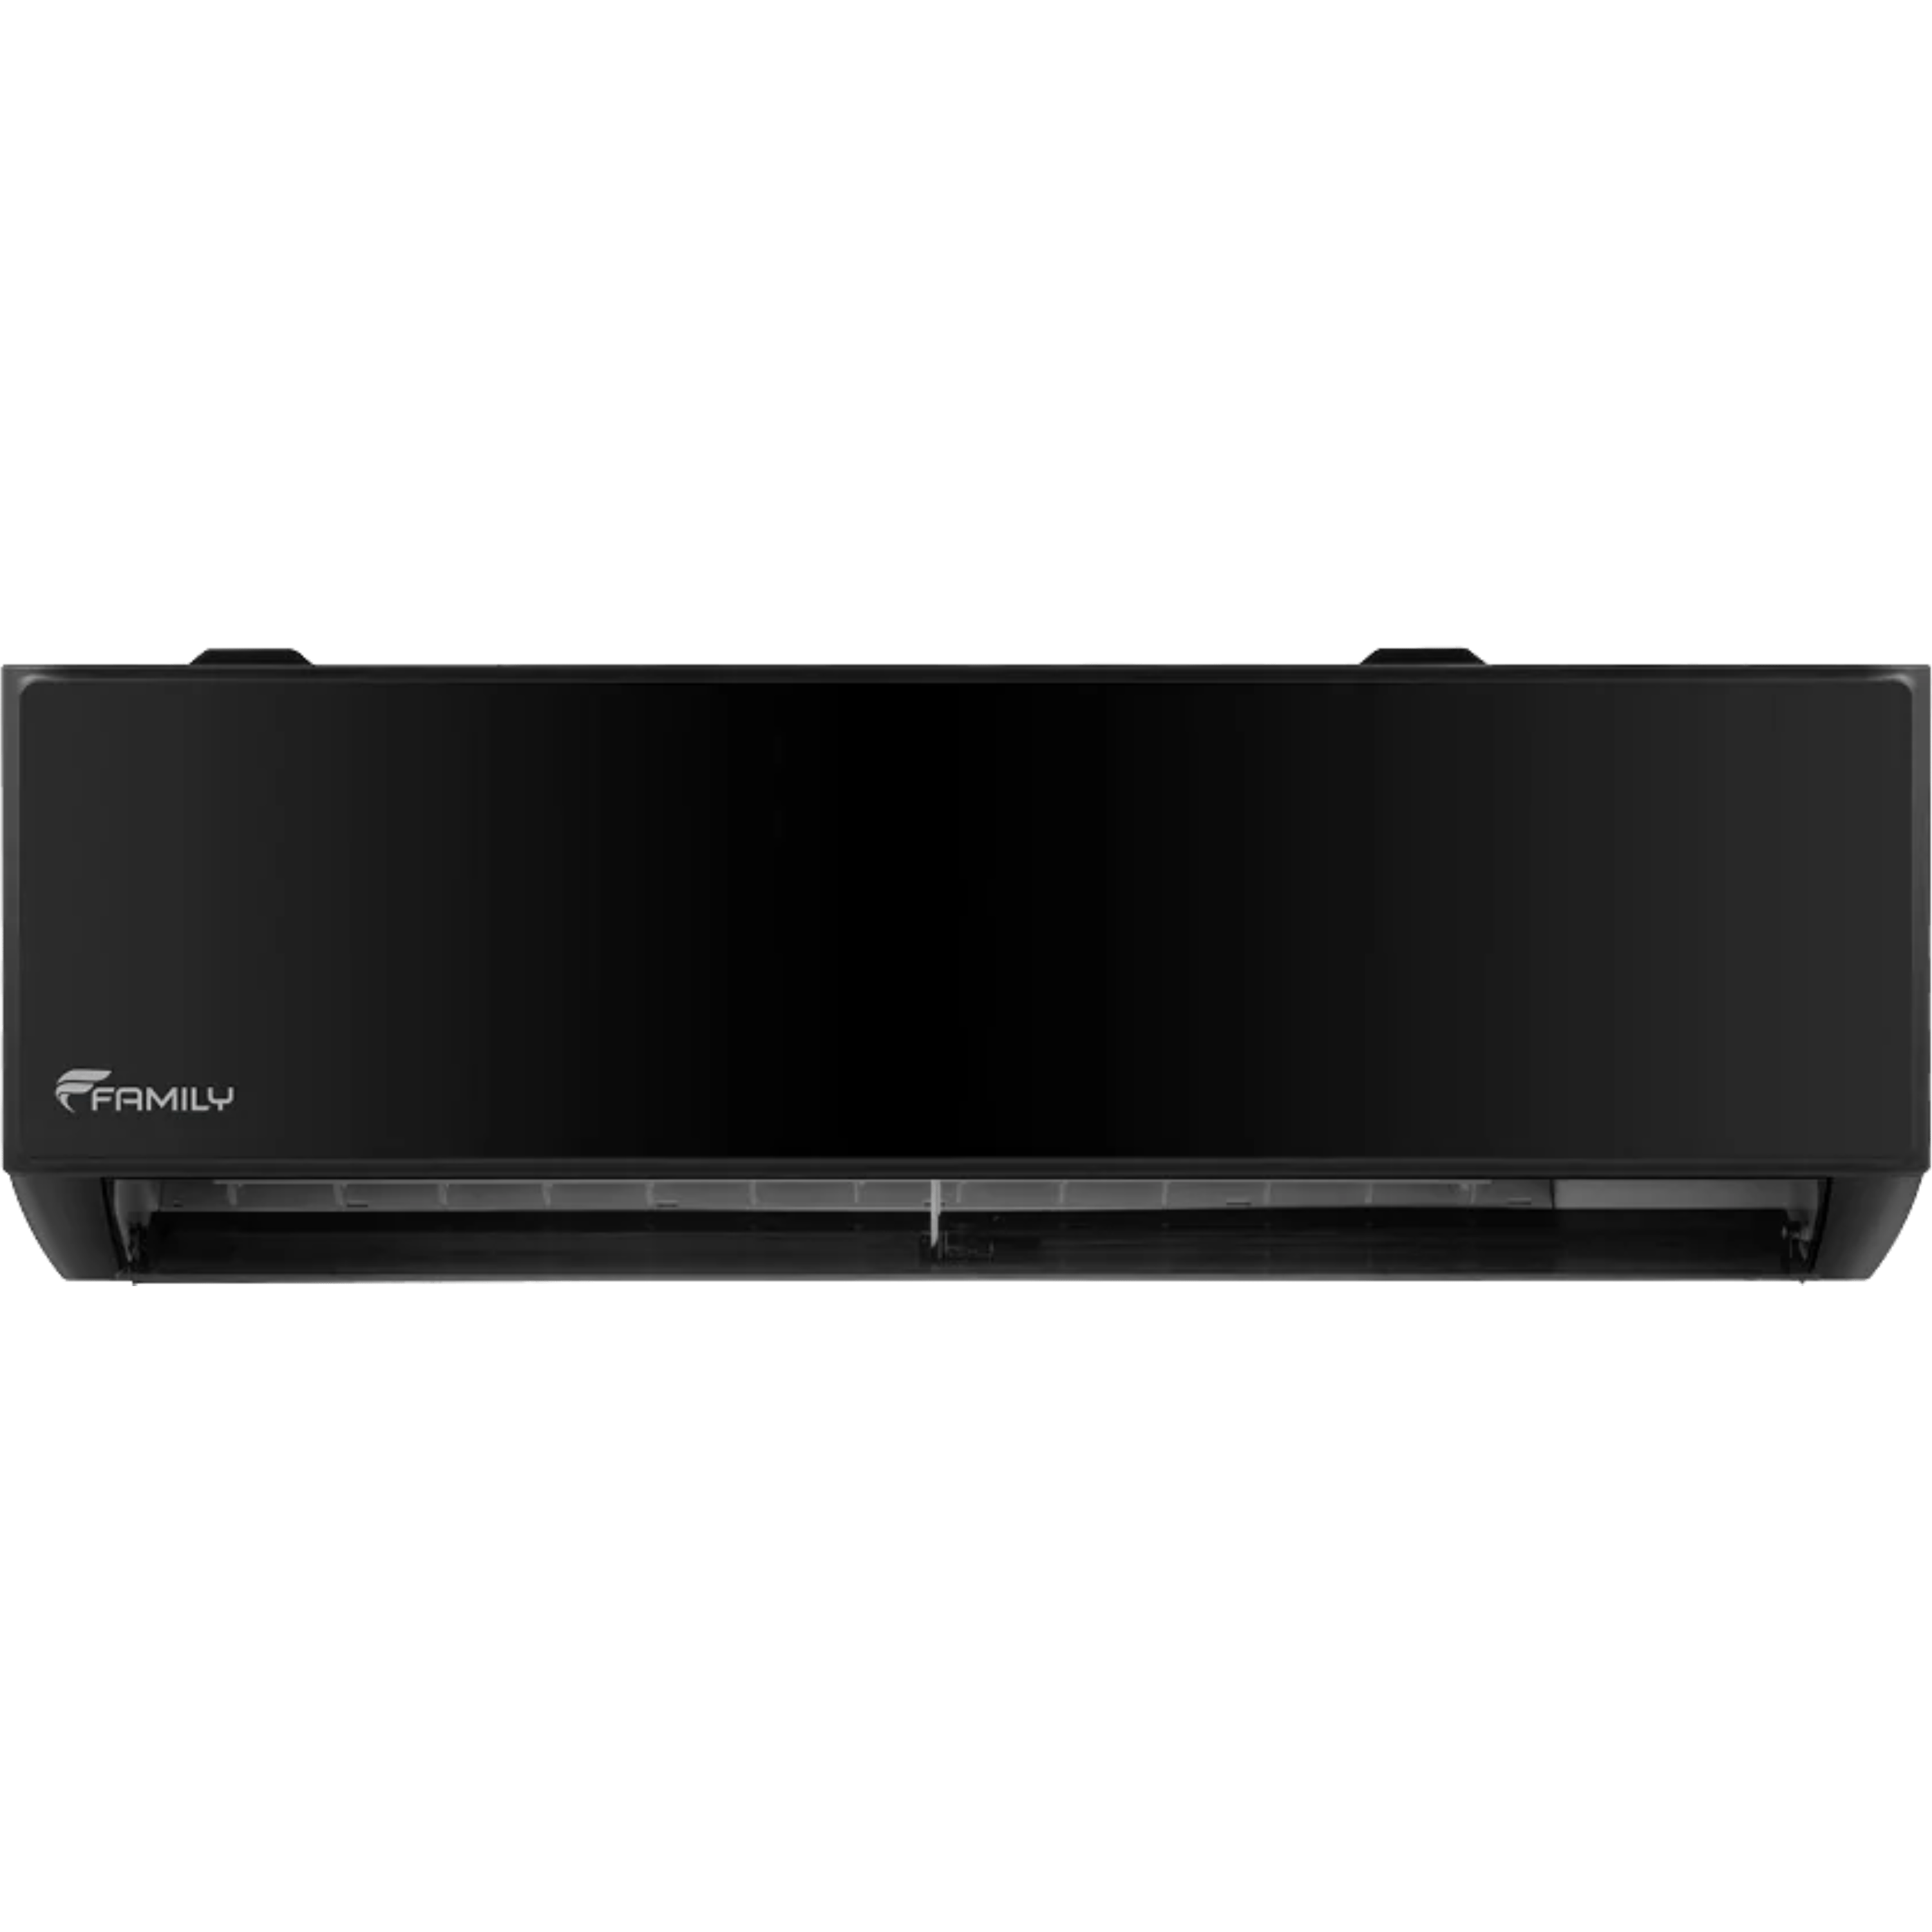 מזגן עילי Family Premium Black inverter WiFi 40 - צבע שחור שבע שנות אחריות ע